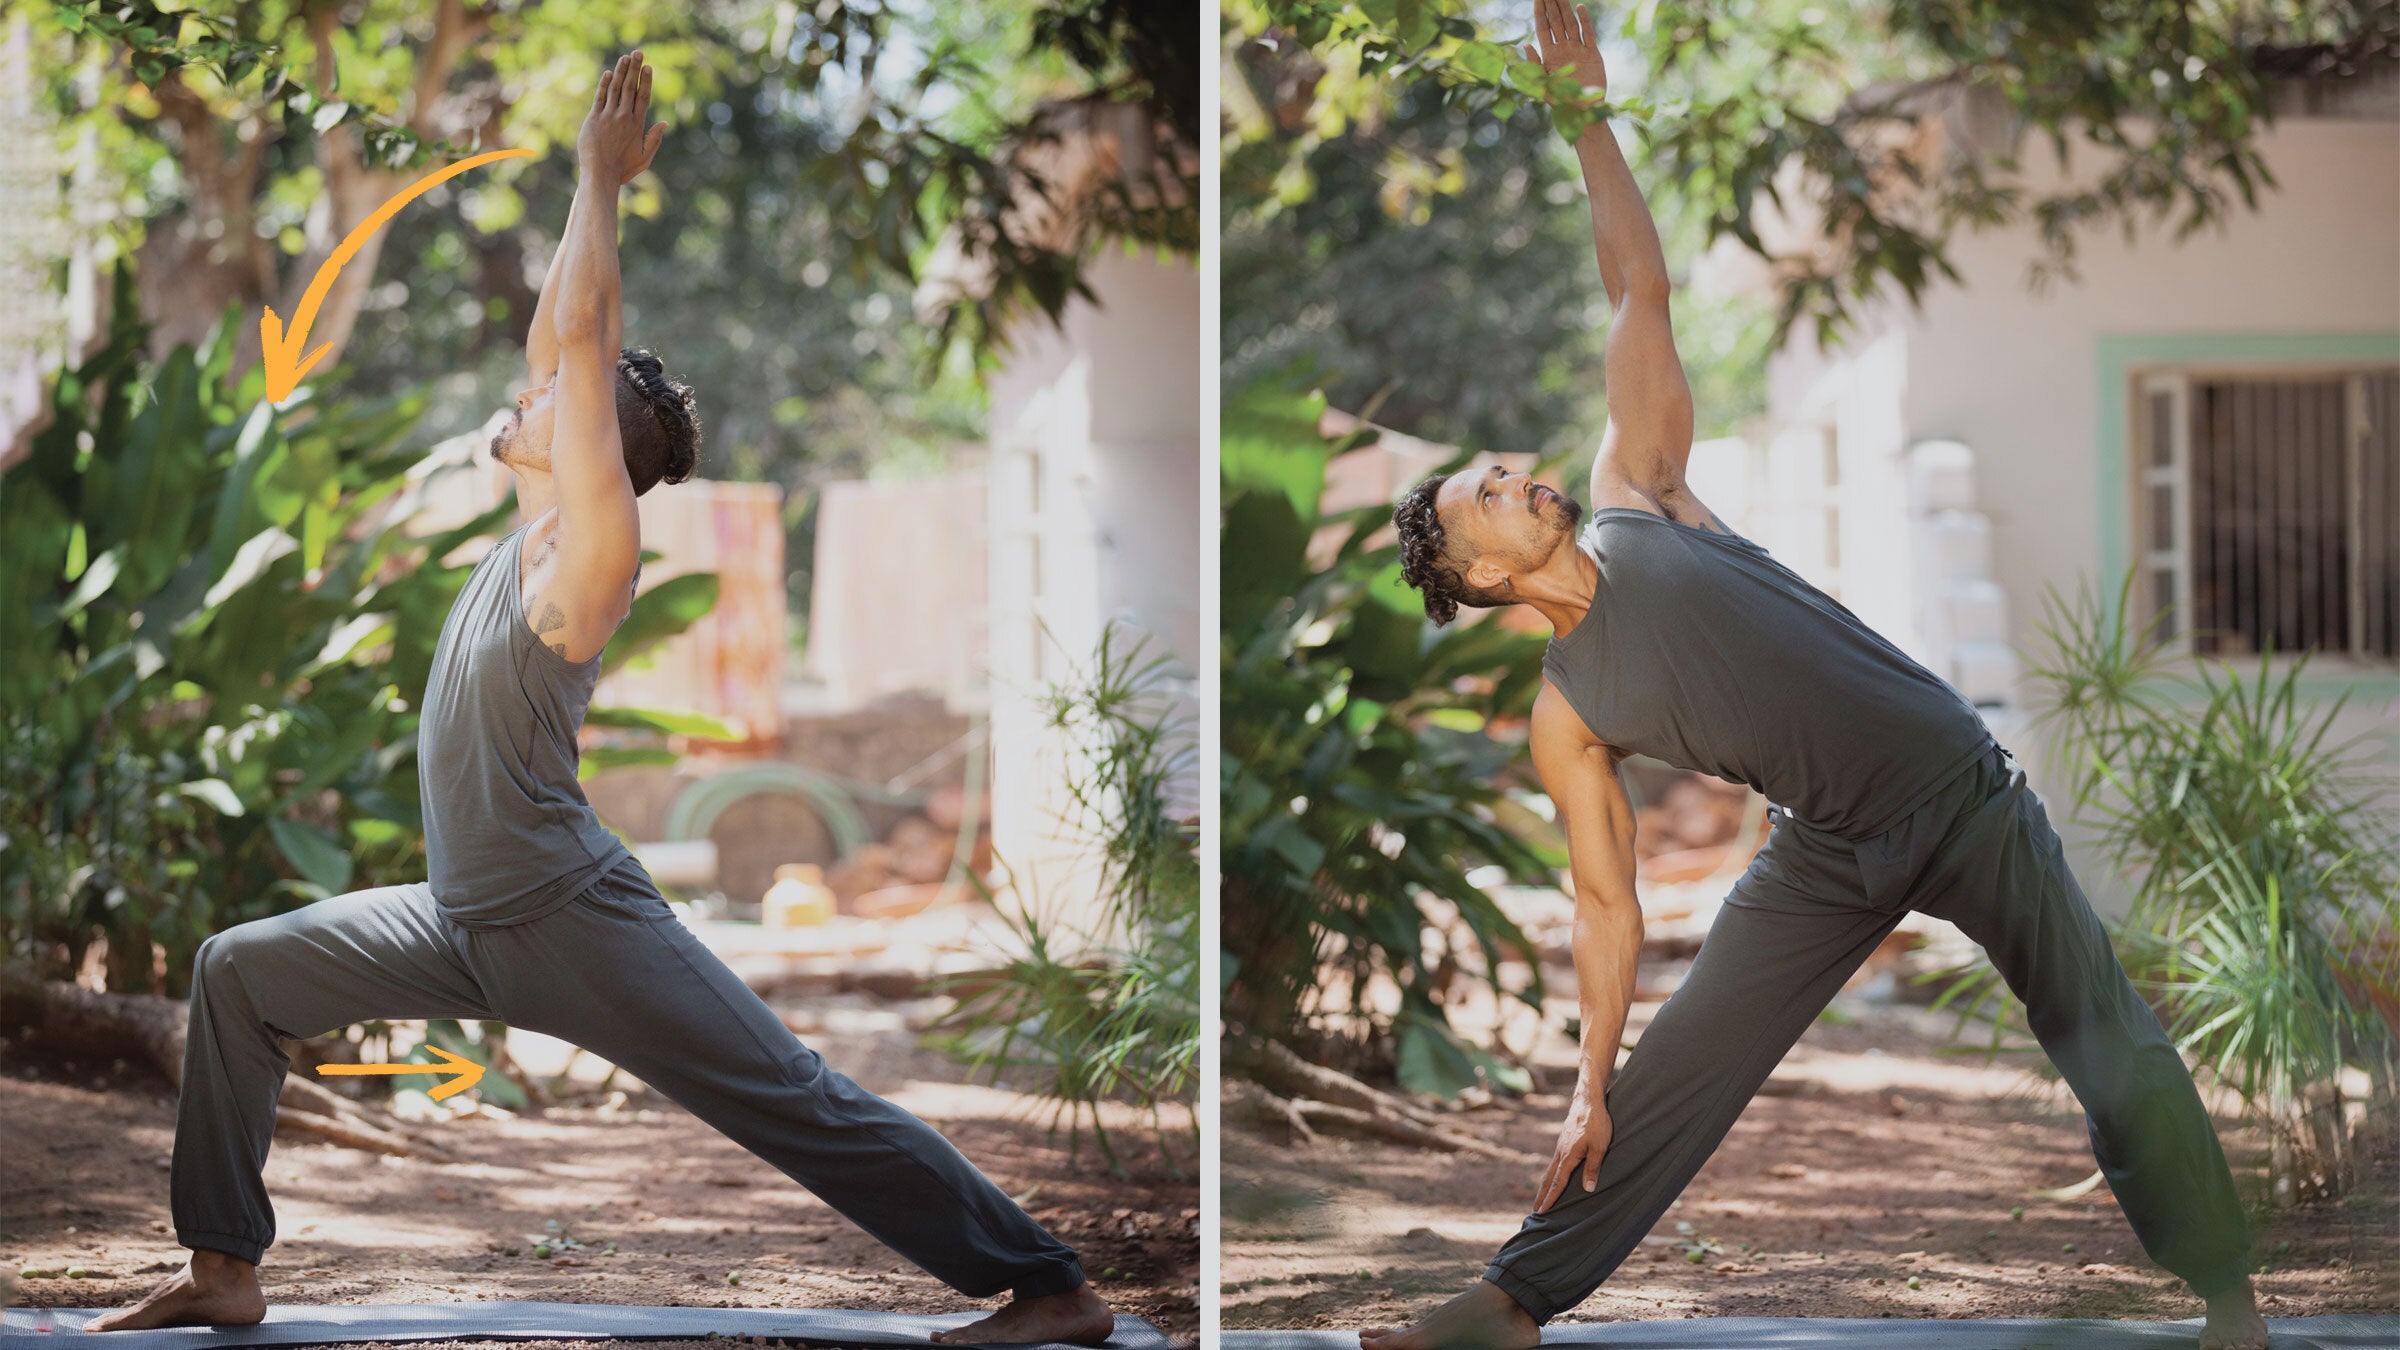 Yoga For Legs: 7 Poses for Toning, Strengthening, Flexibility